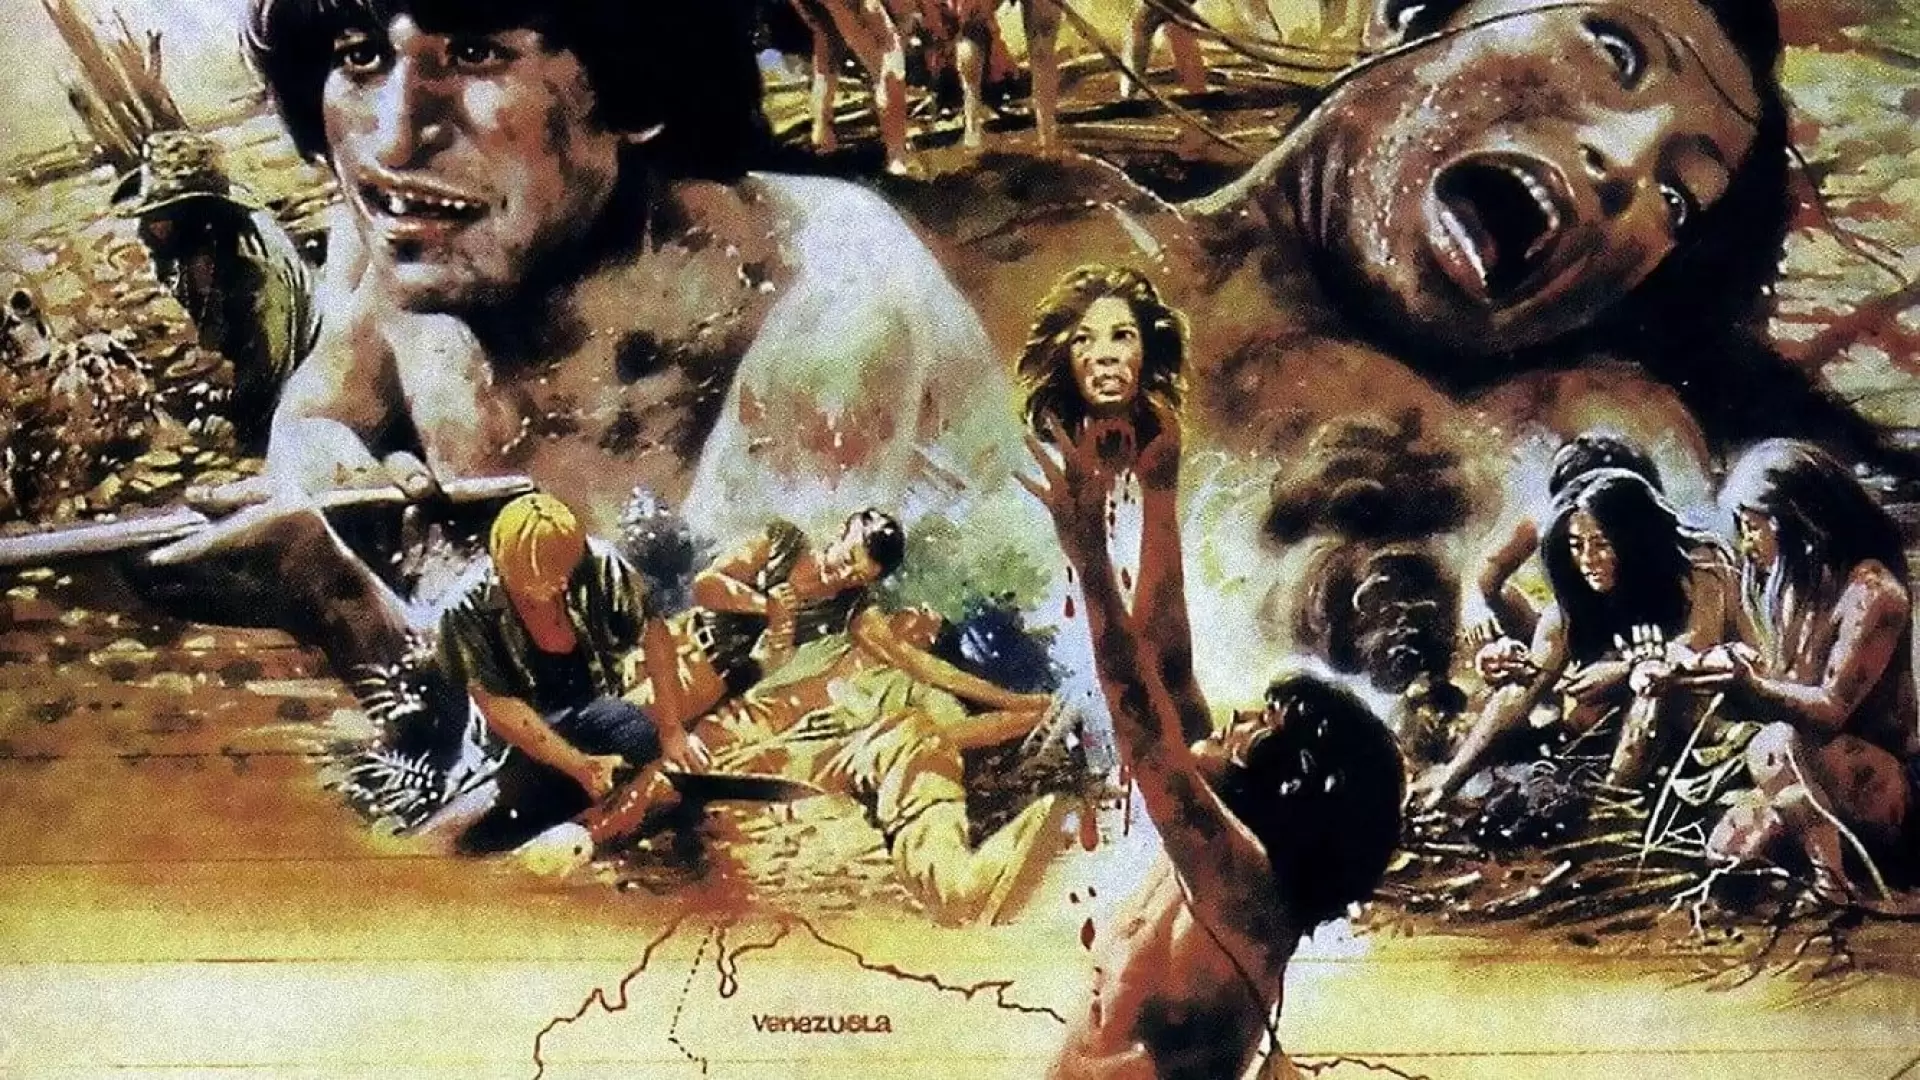 دانلود فیلم Cannibal Holocaust 1980 (کانیبال هولوکاست) با زیرنویس فارسی و تماشای آنلاین